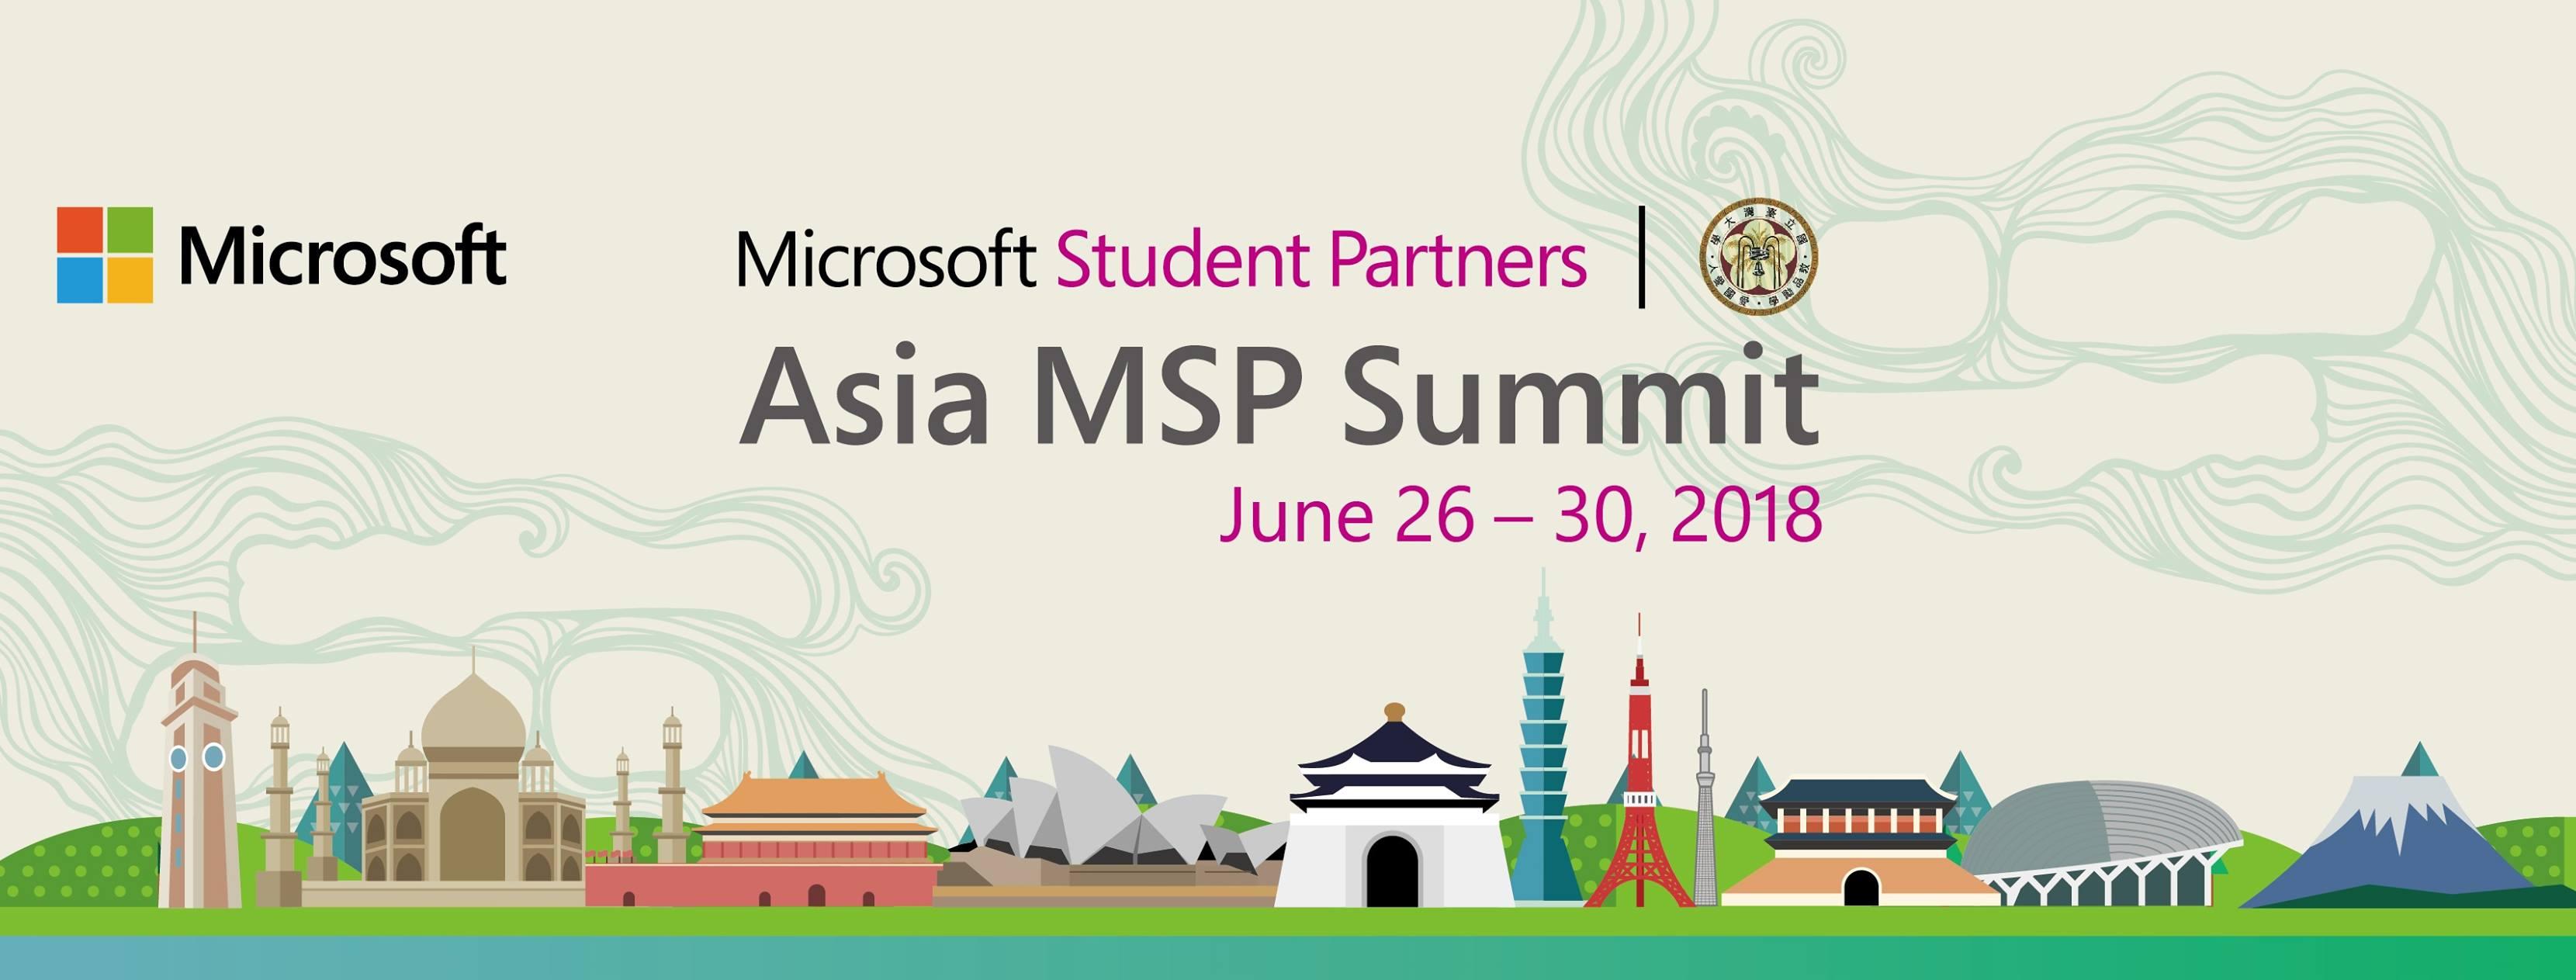 asia-msp-summit-banner